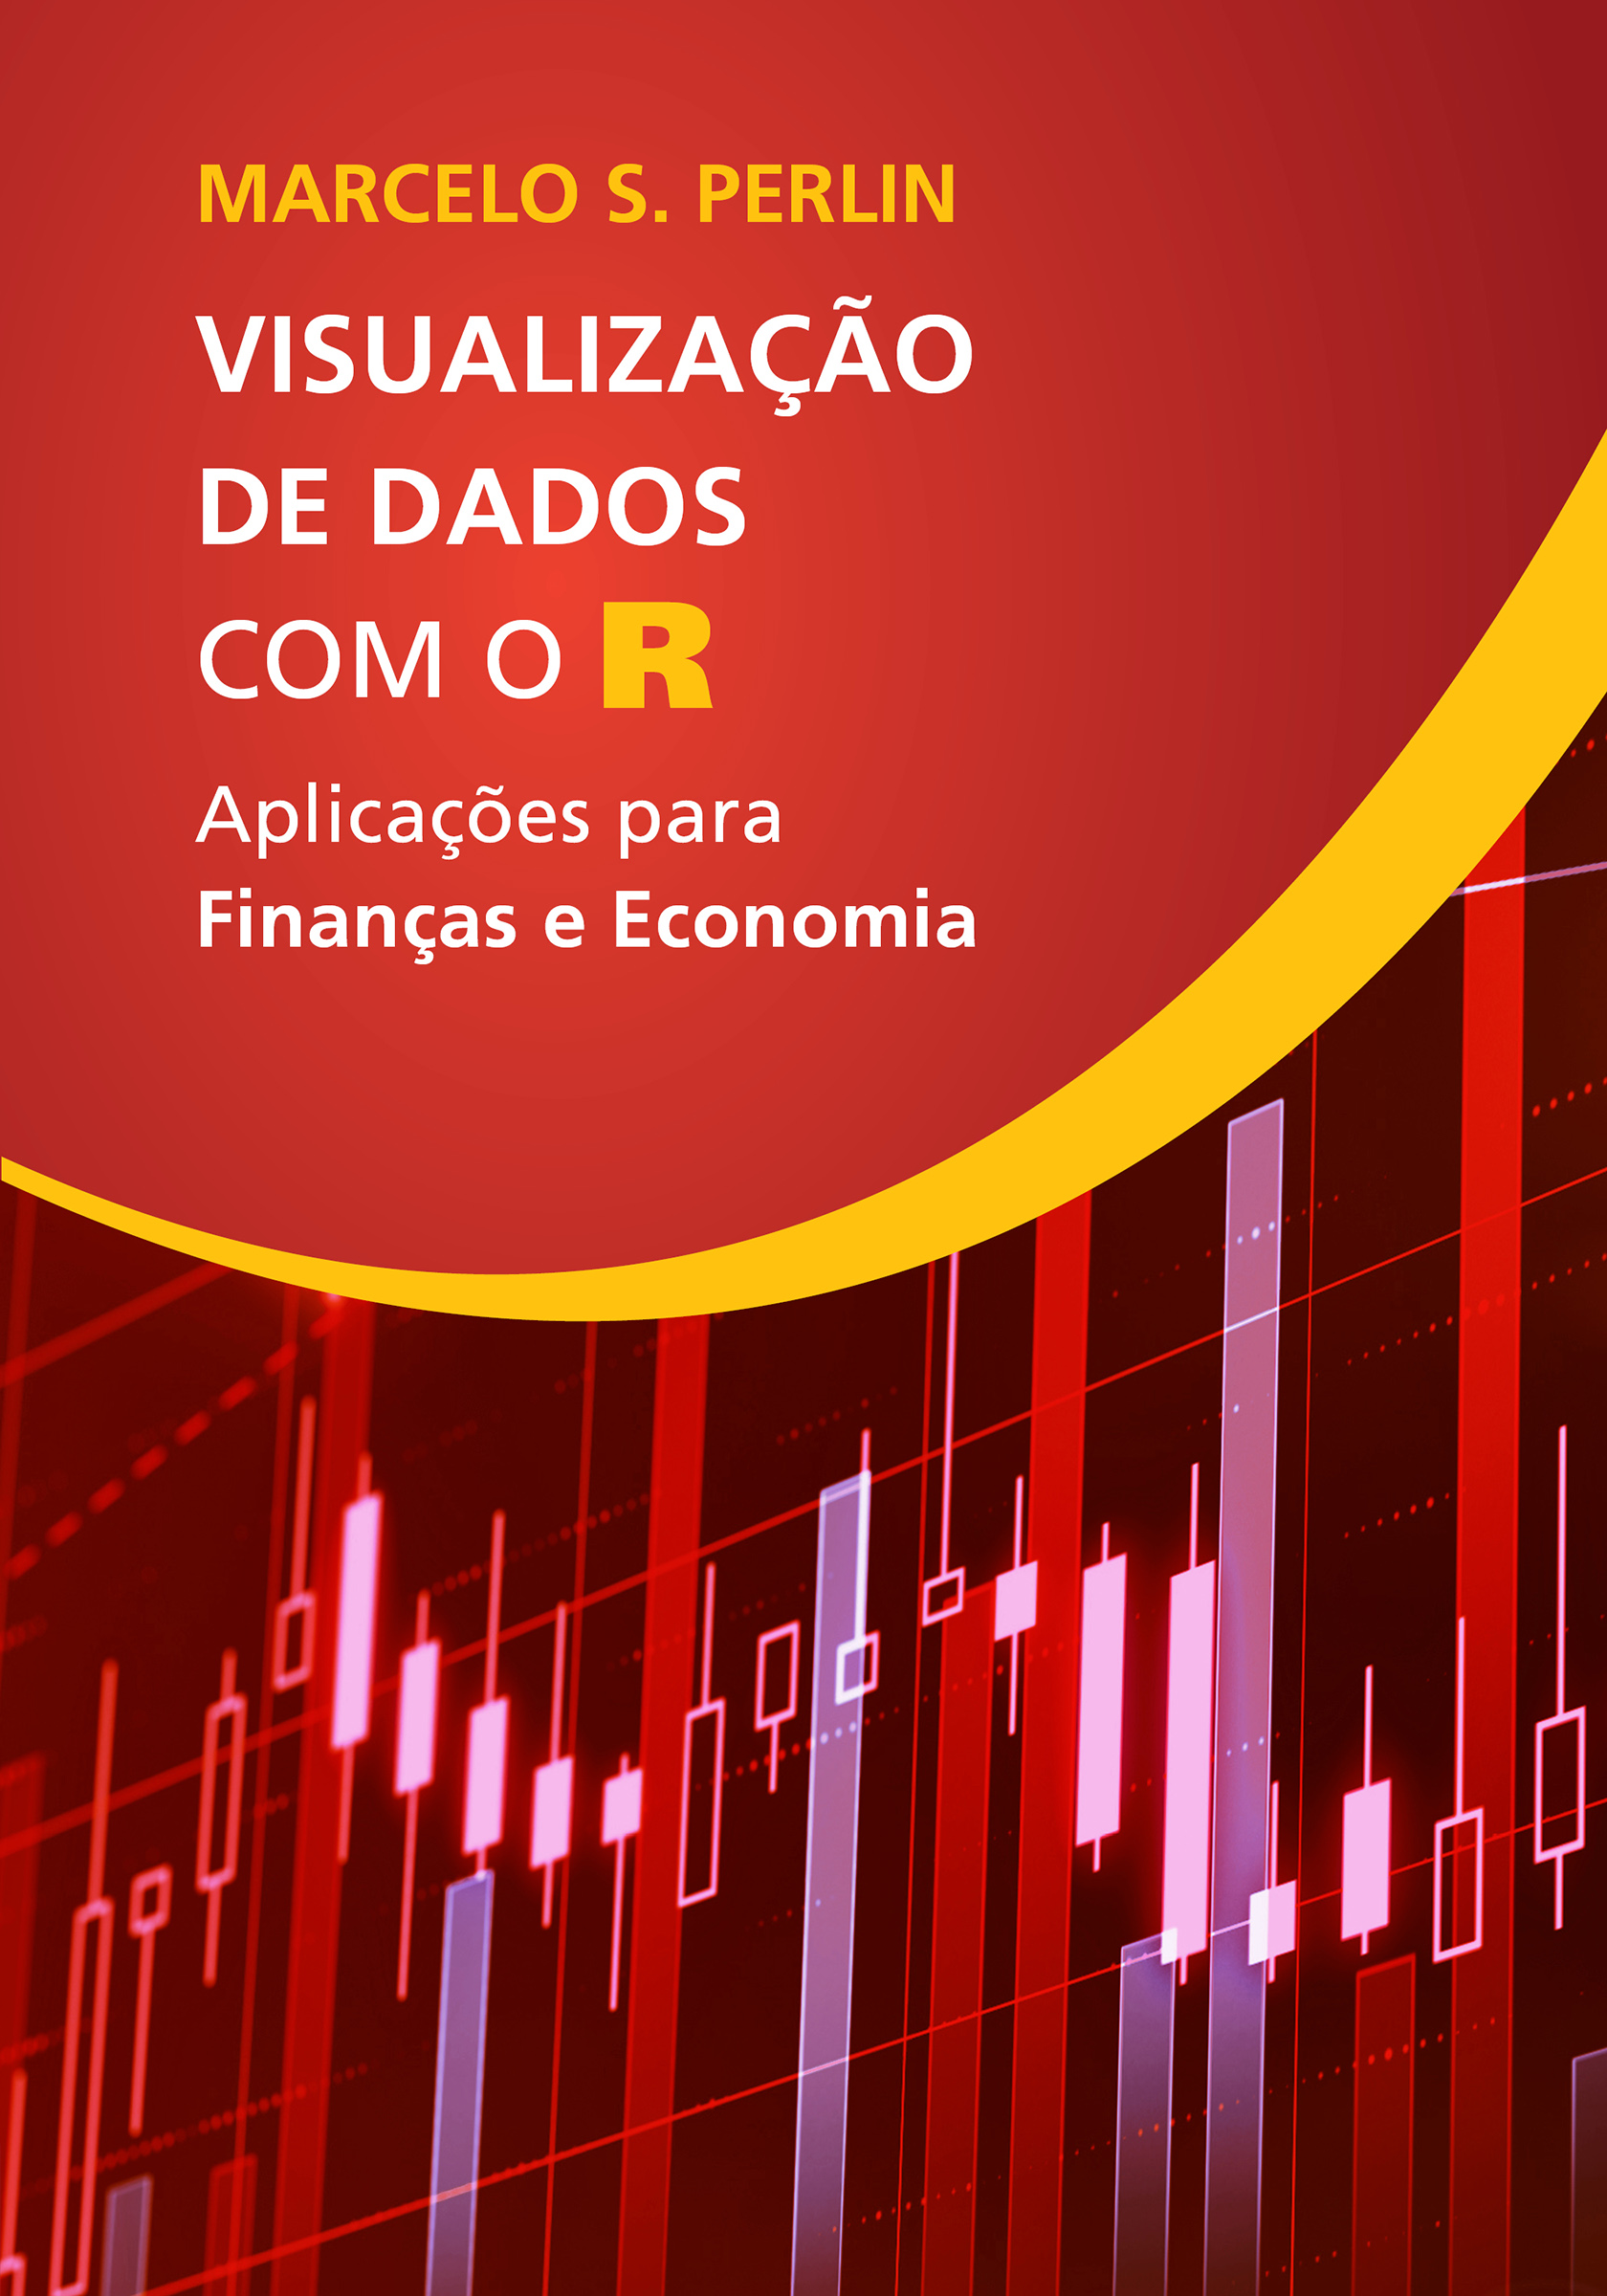 Ebook na Amazom.com.br